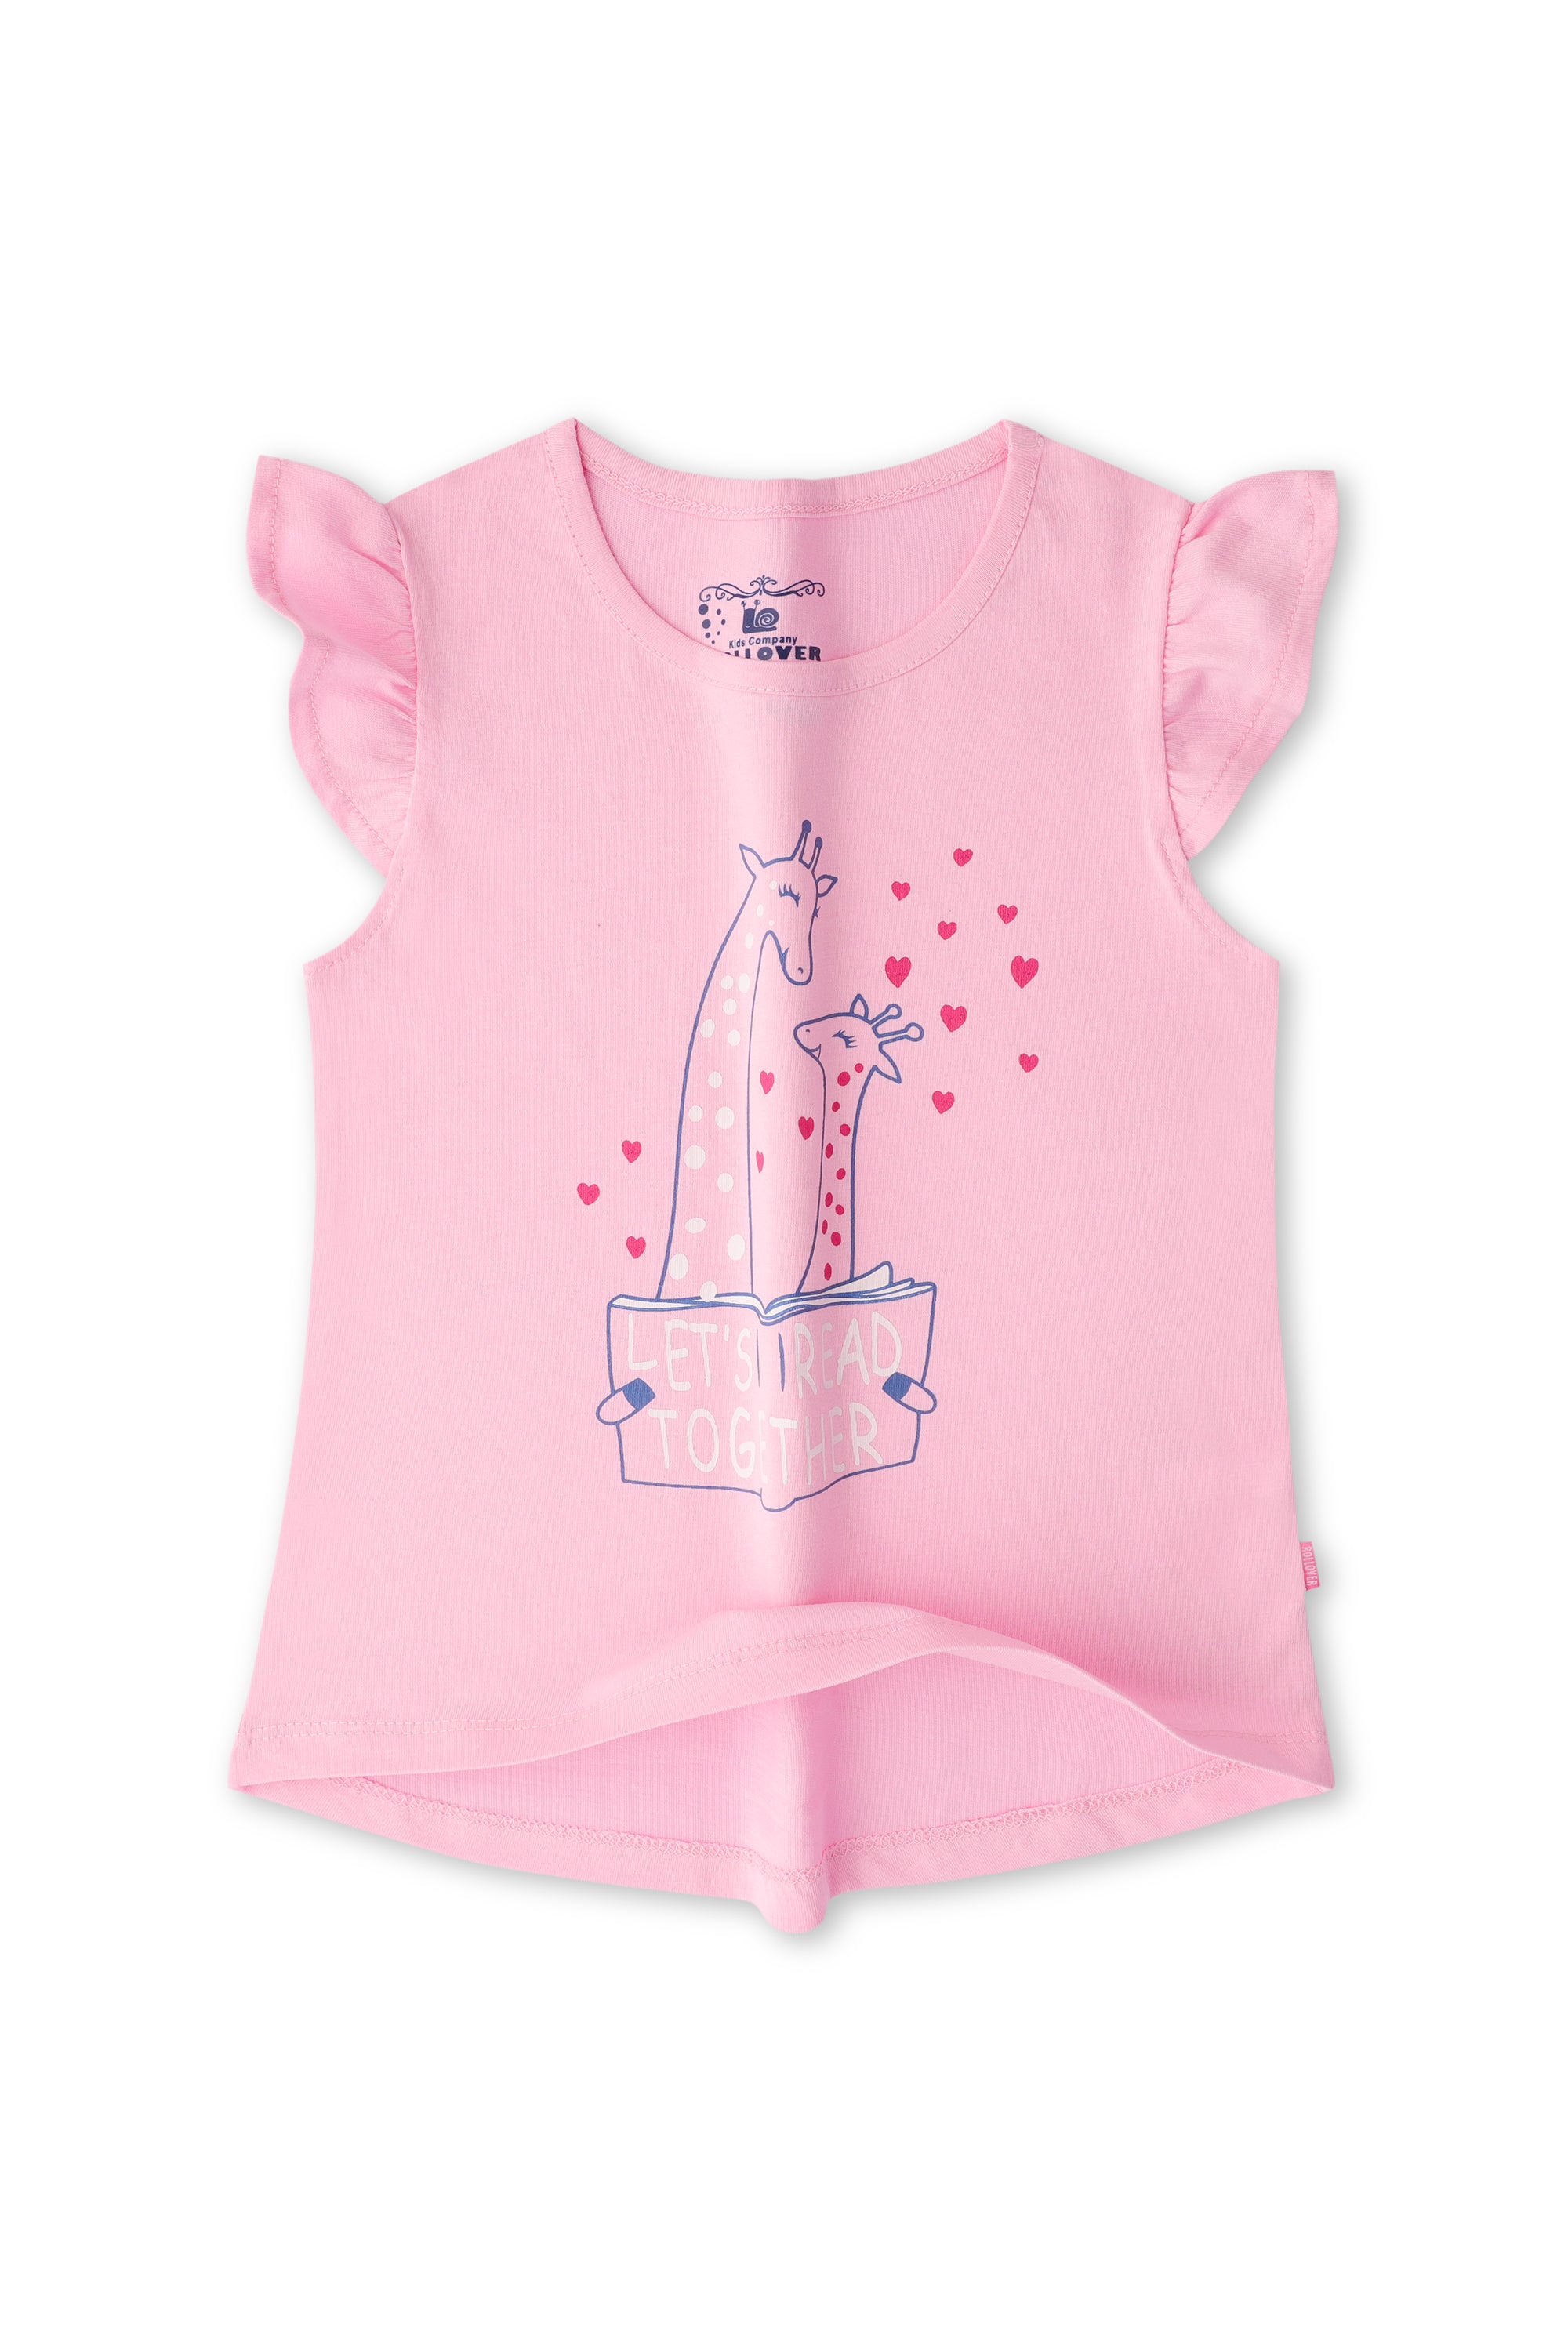 Girls Pink Giraffe T-shirt